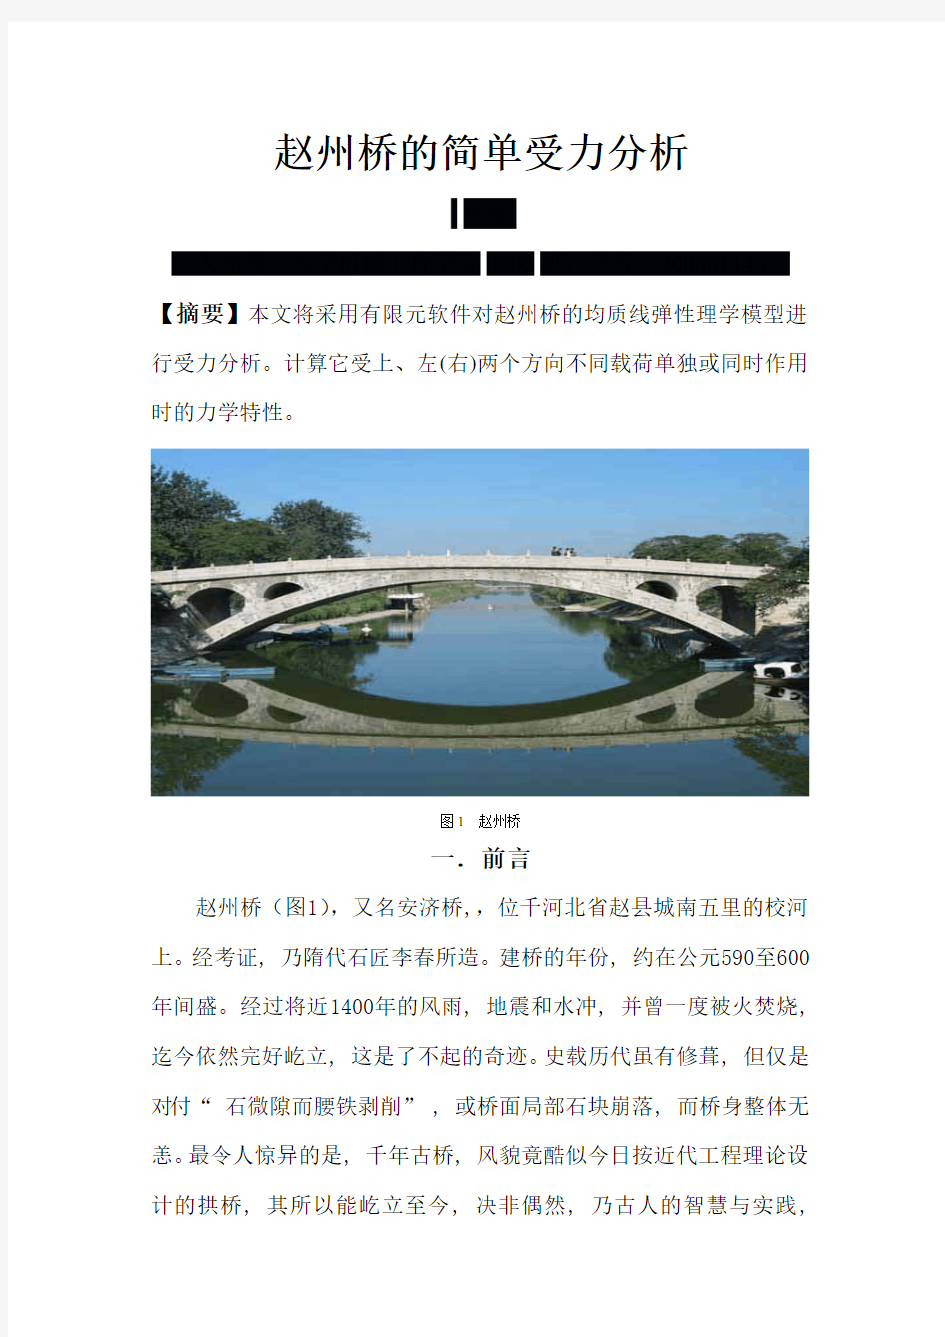 赵州桥的简单受力分析